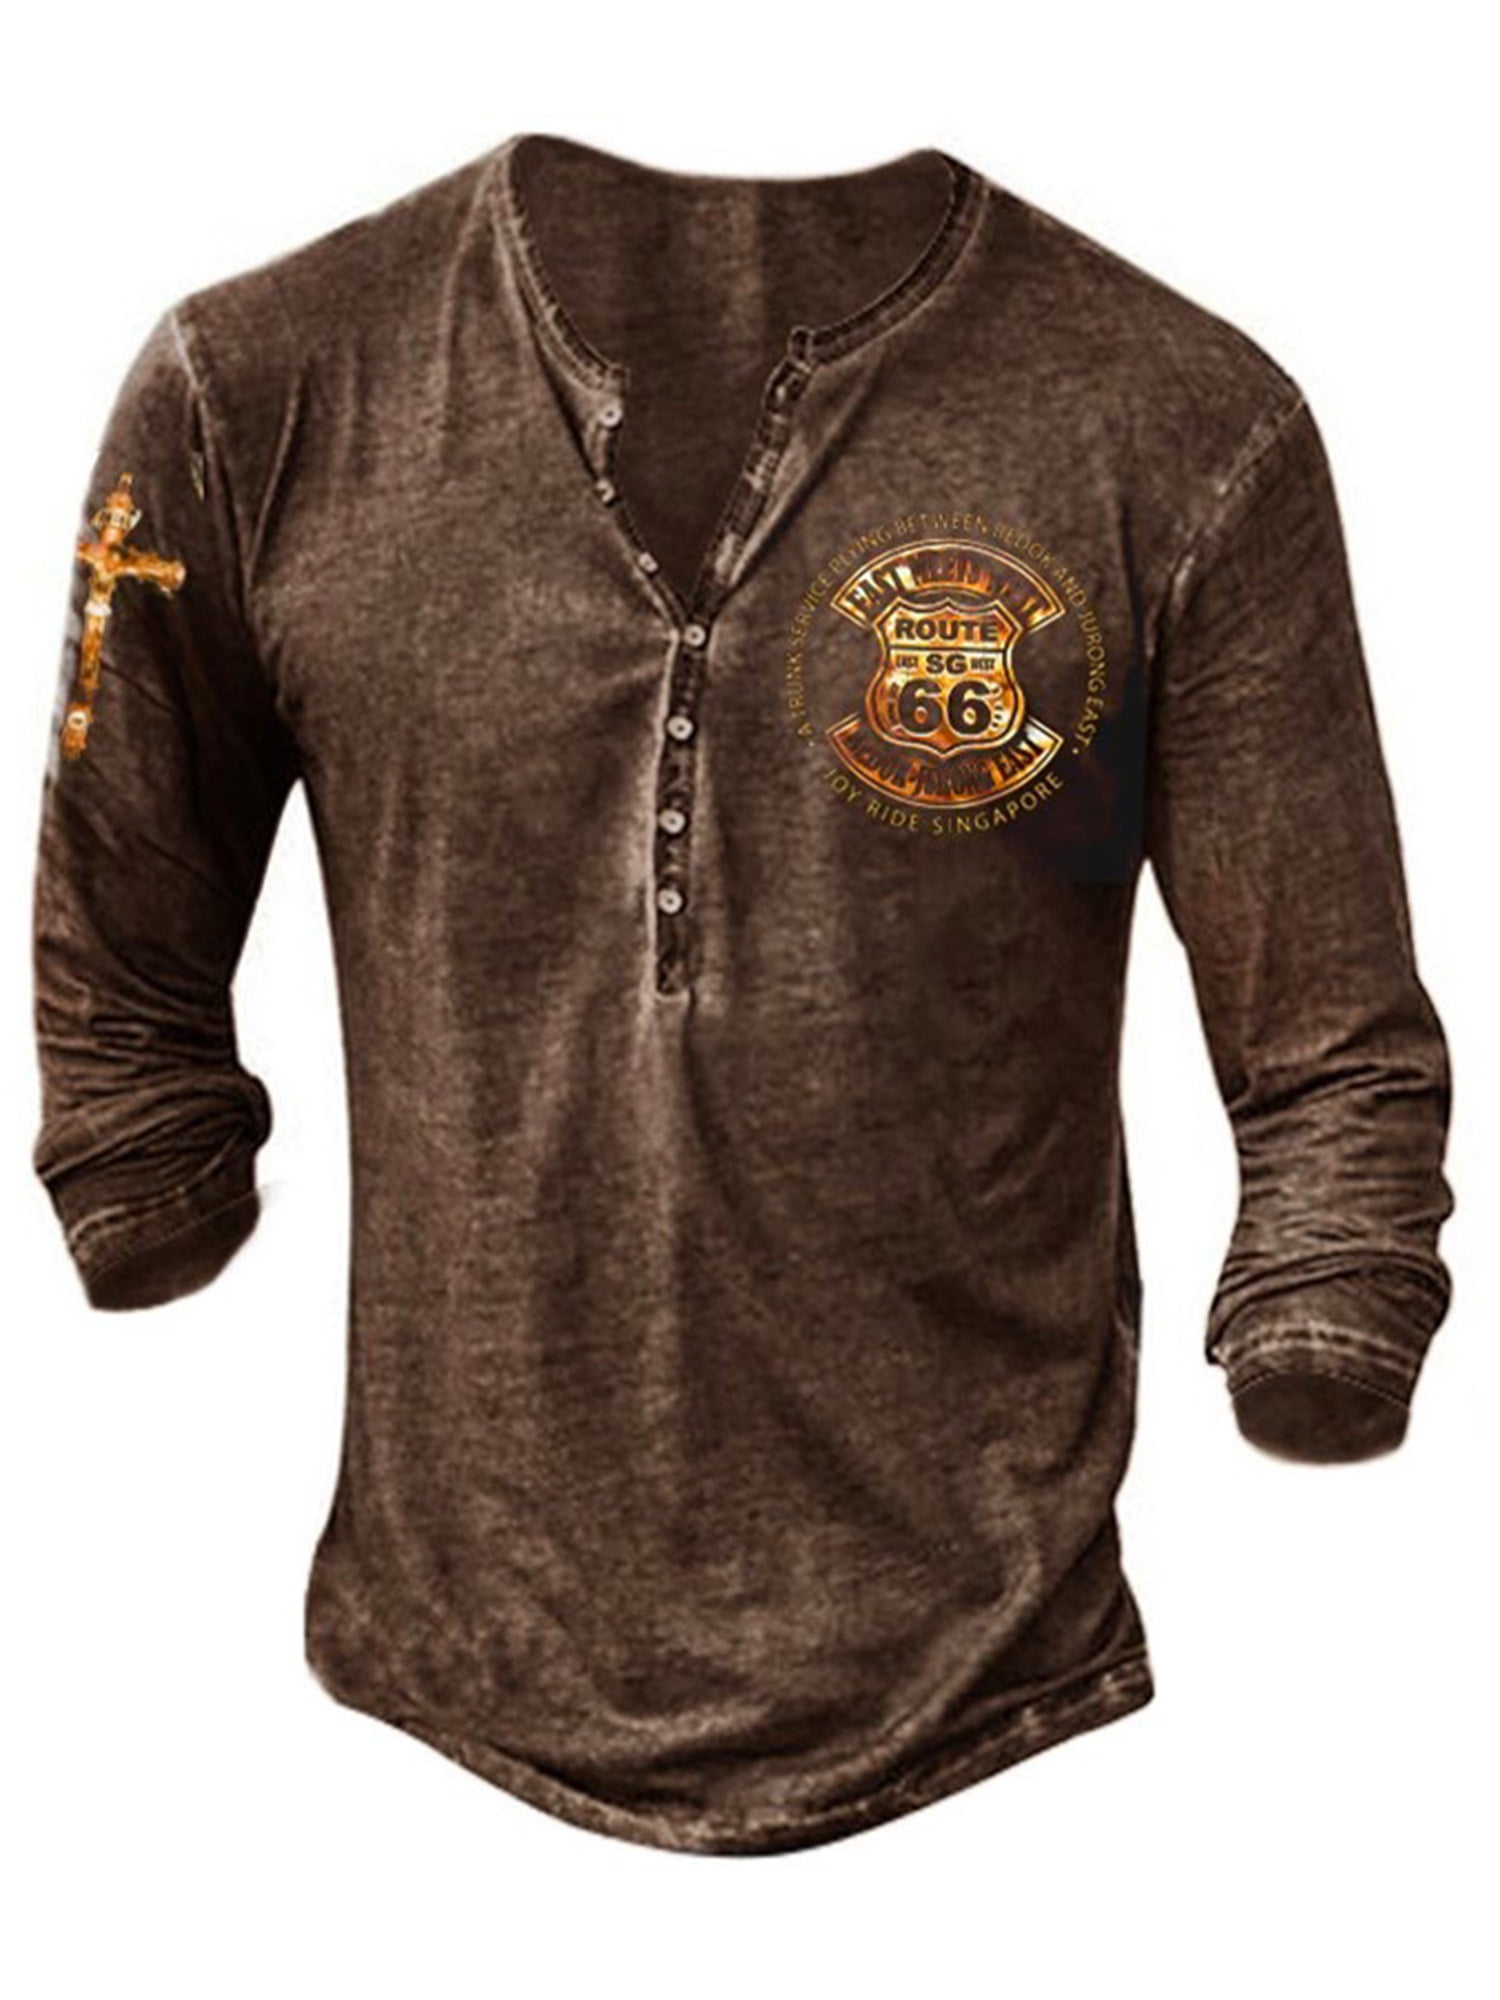 Capreze Men Henley Shirt Short/Long Sleeve Vintage Print Casual Buttons ...